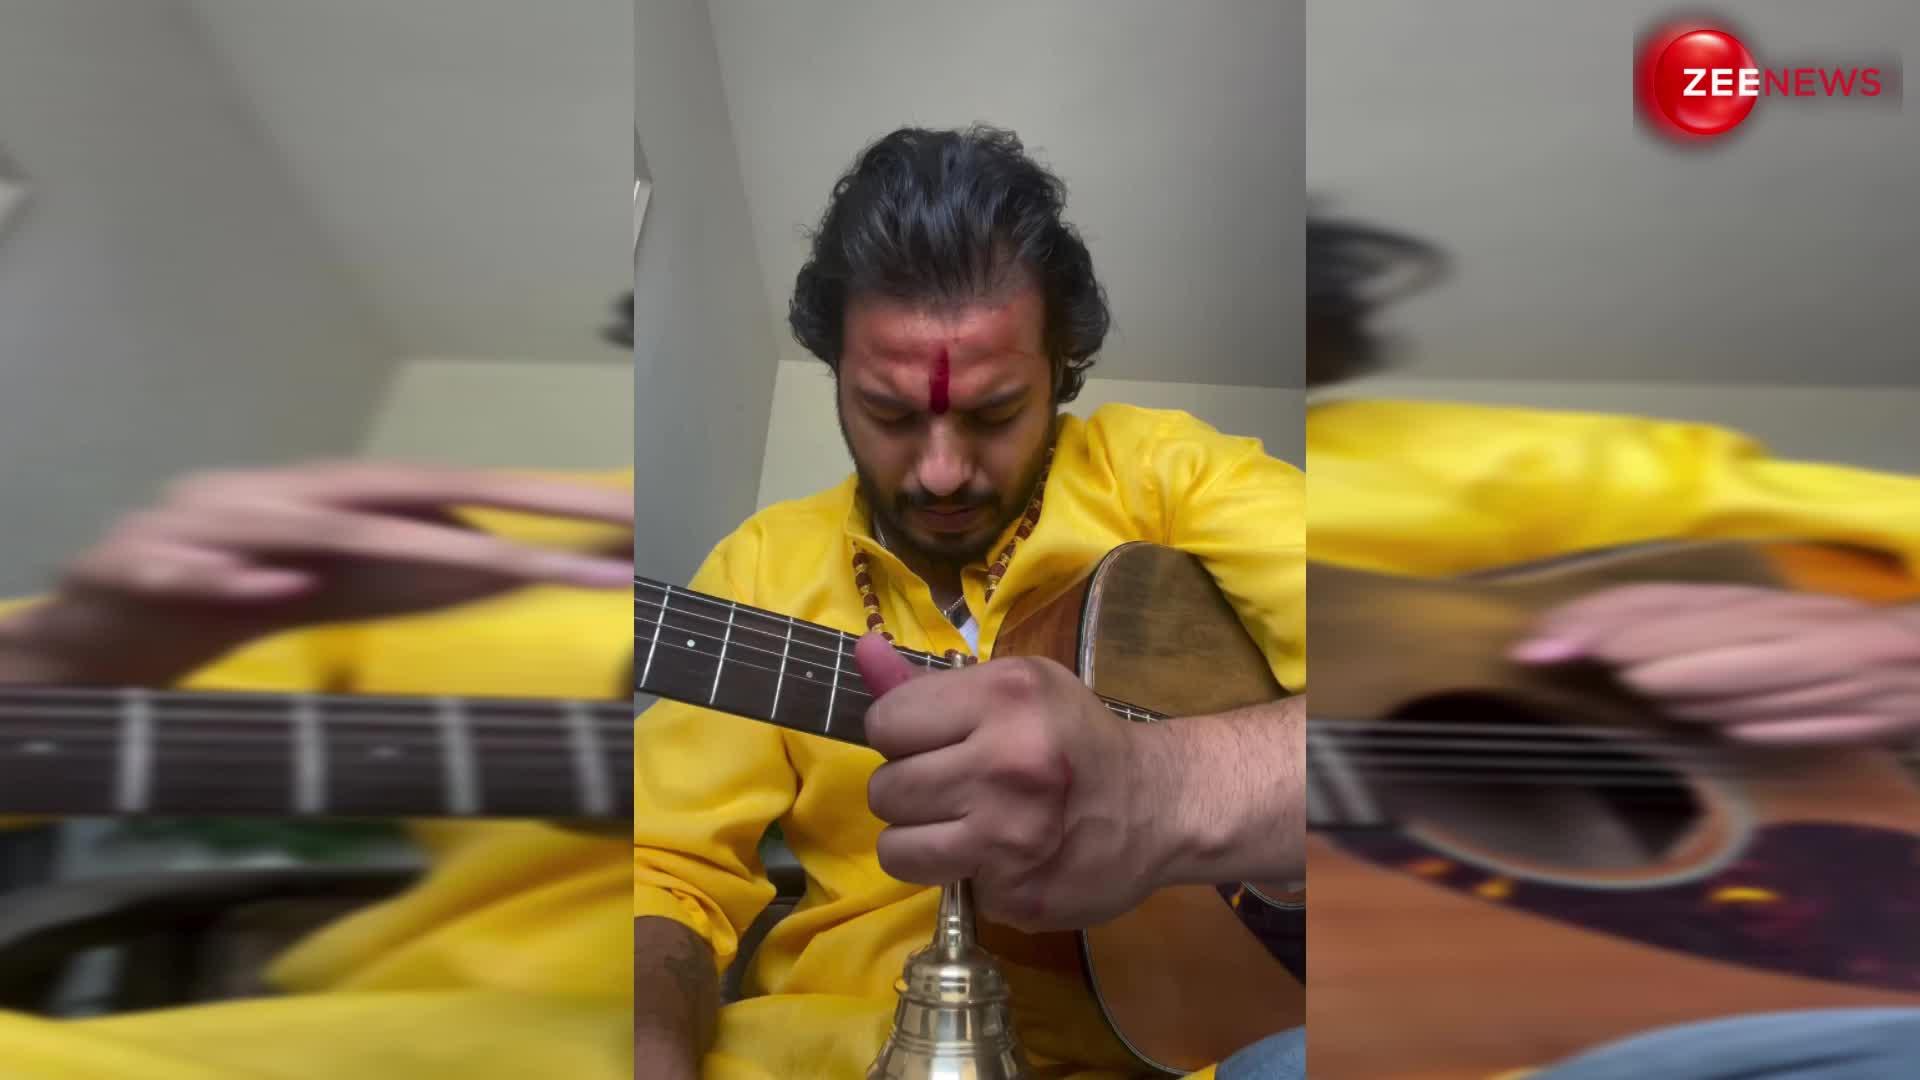 इसे कहते हैं इंडियन टैलेंट! लड़के ने गिटार पर बजा दिया पूरा शिव तांडव, वीडियो देख खुशी से खिल उठेगा दिल